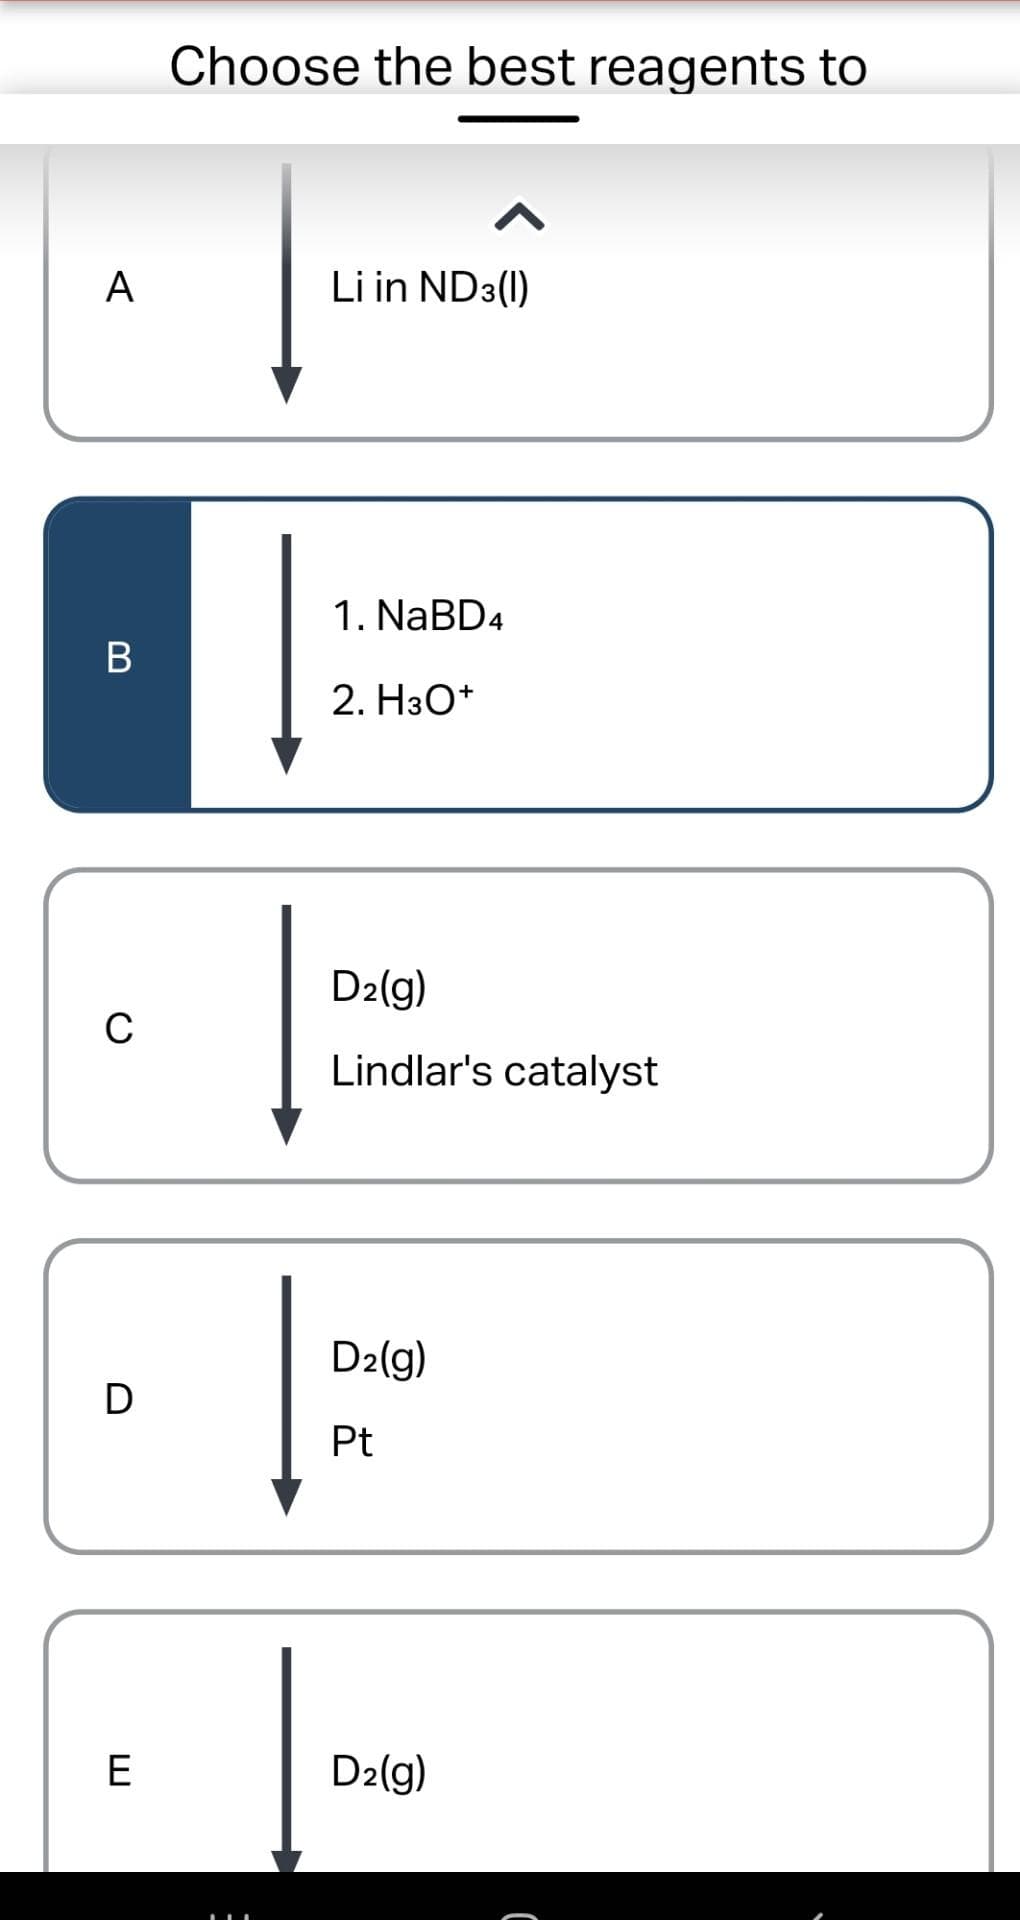 A
B
C
D
E
Choose the best reagents to
^
Li in ND3(1)
1. NaBD4
2. H3O+
D₂(g)
Lindlar's catalyst
D₂(g)
Pt
D₂(g)